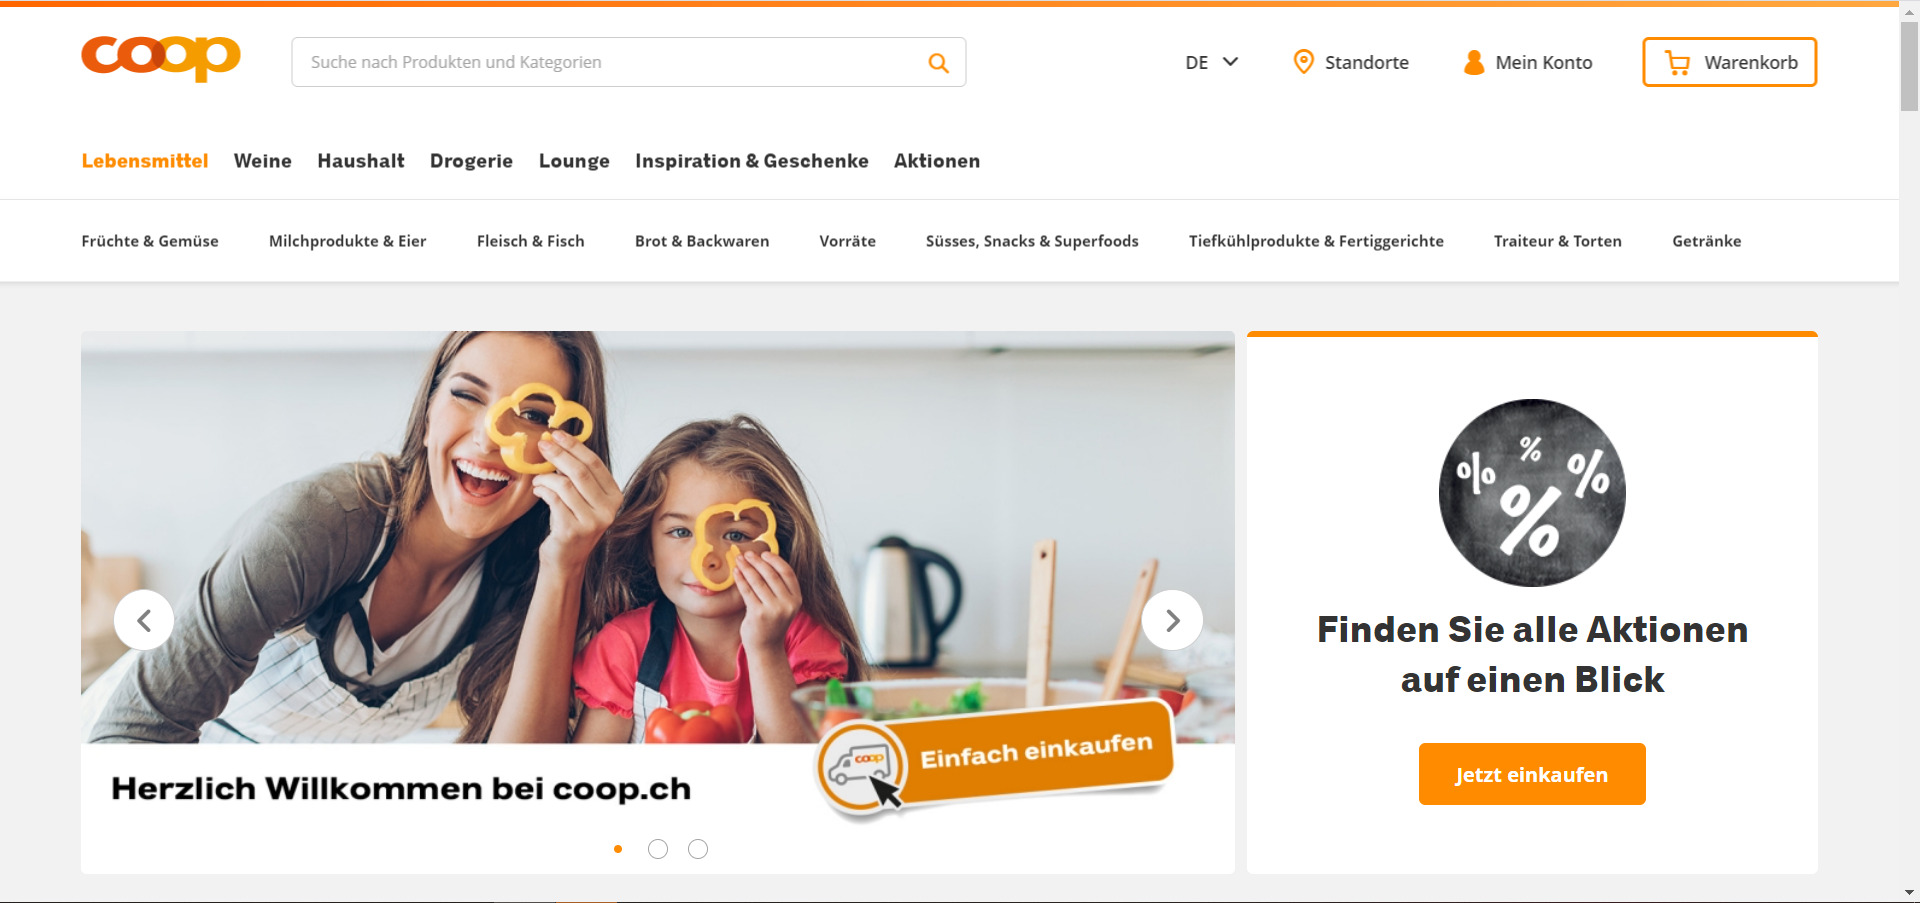 Startseite der neuen coop.ch Plattform / Quelle: beta.coop.ch